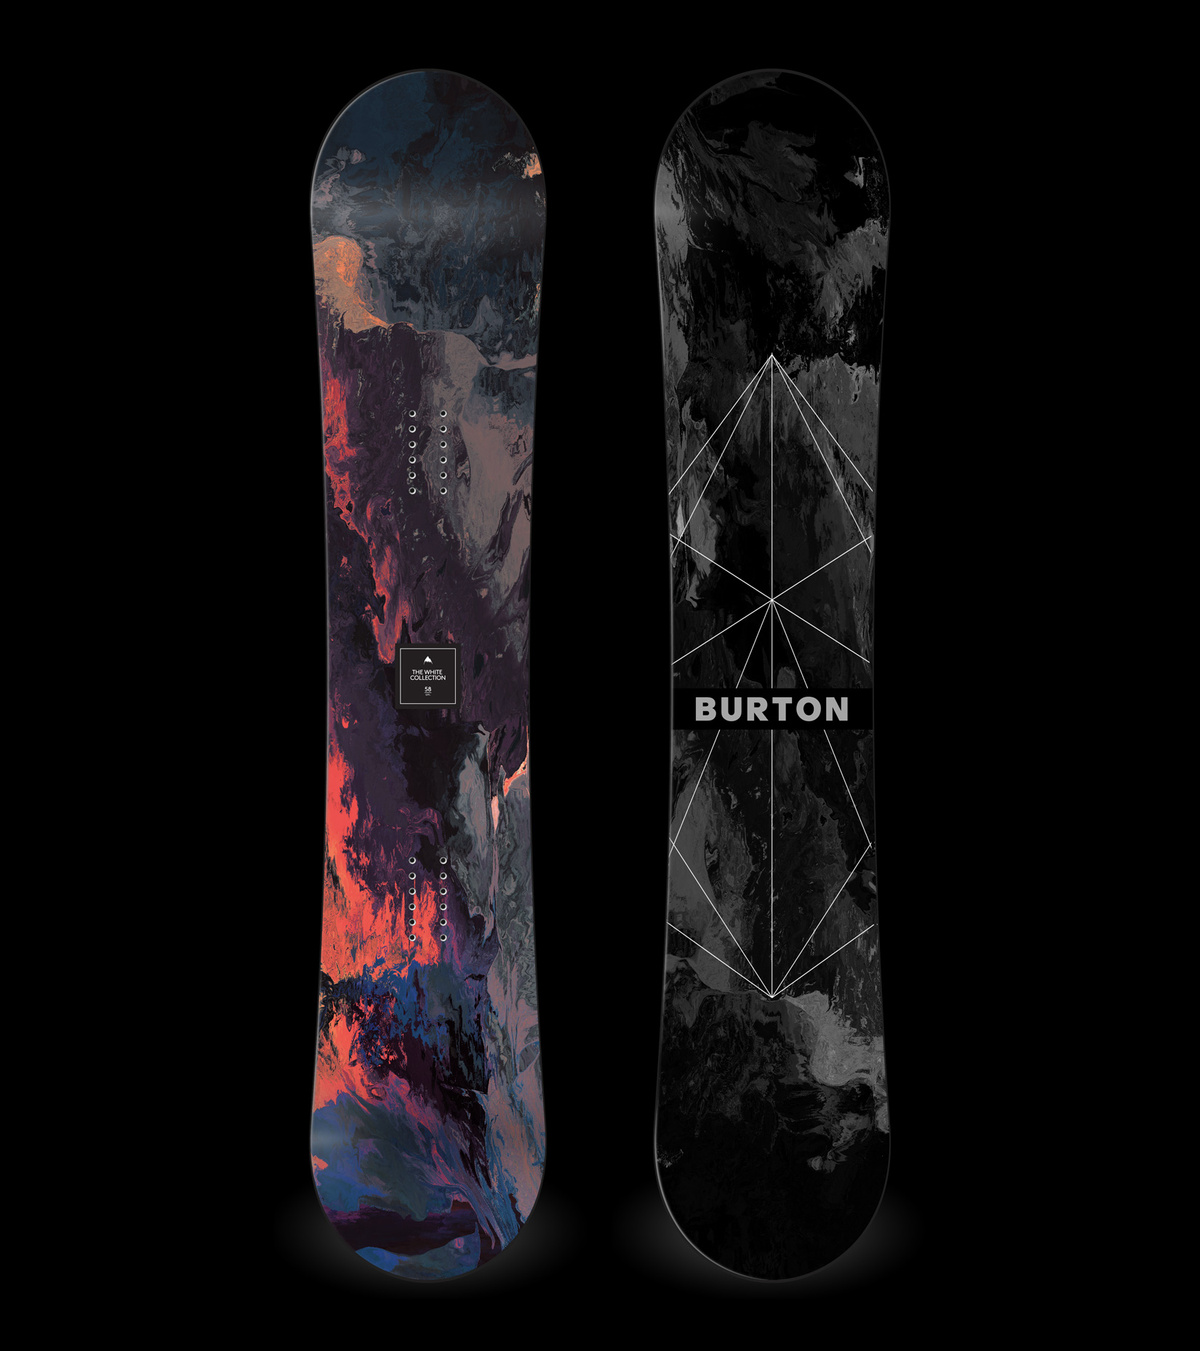 BURTON snowboards Sticker Diecut Set 19 Total Snowboarding Snow Shawn White 